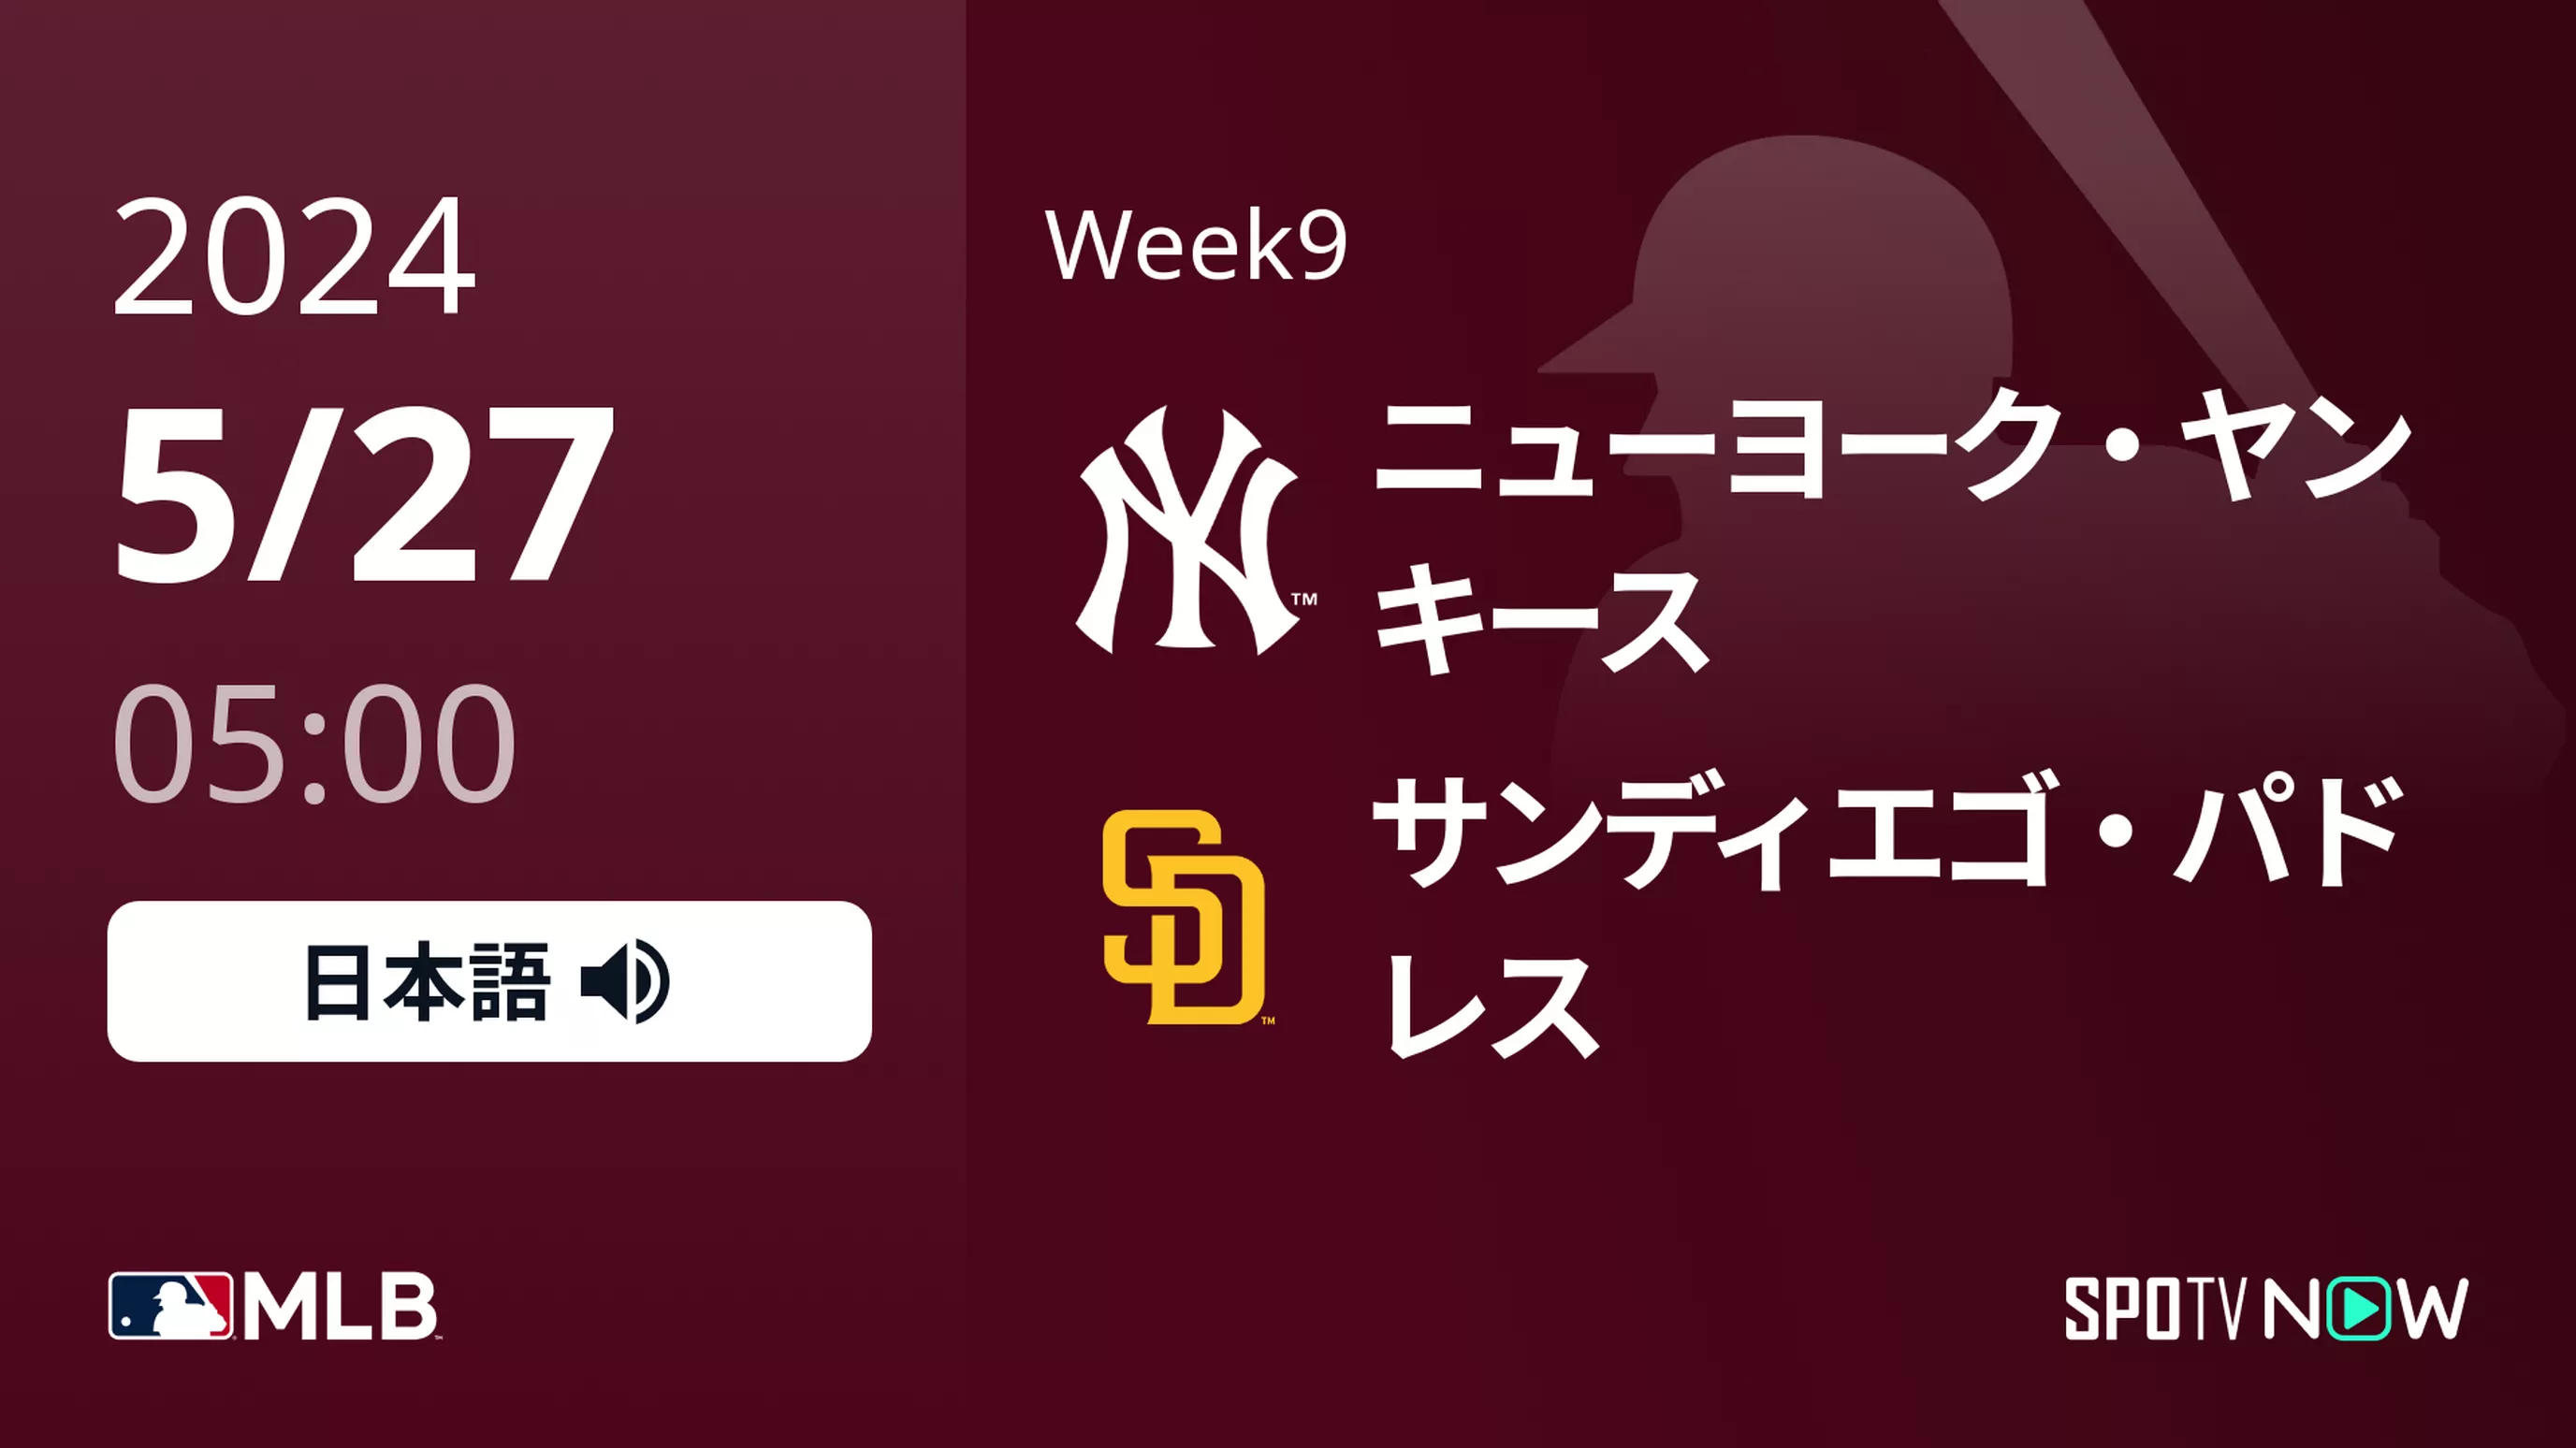 Week9 ヤンキース vs パドレス 5/27[MLB]